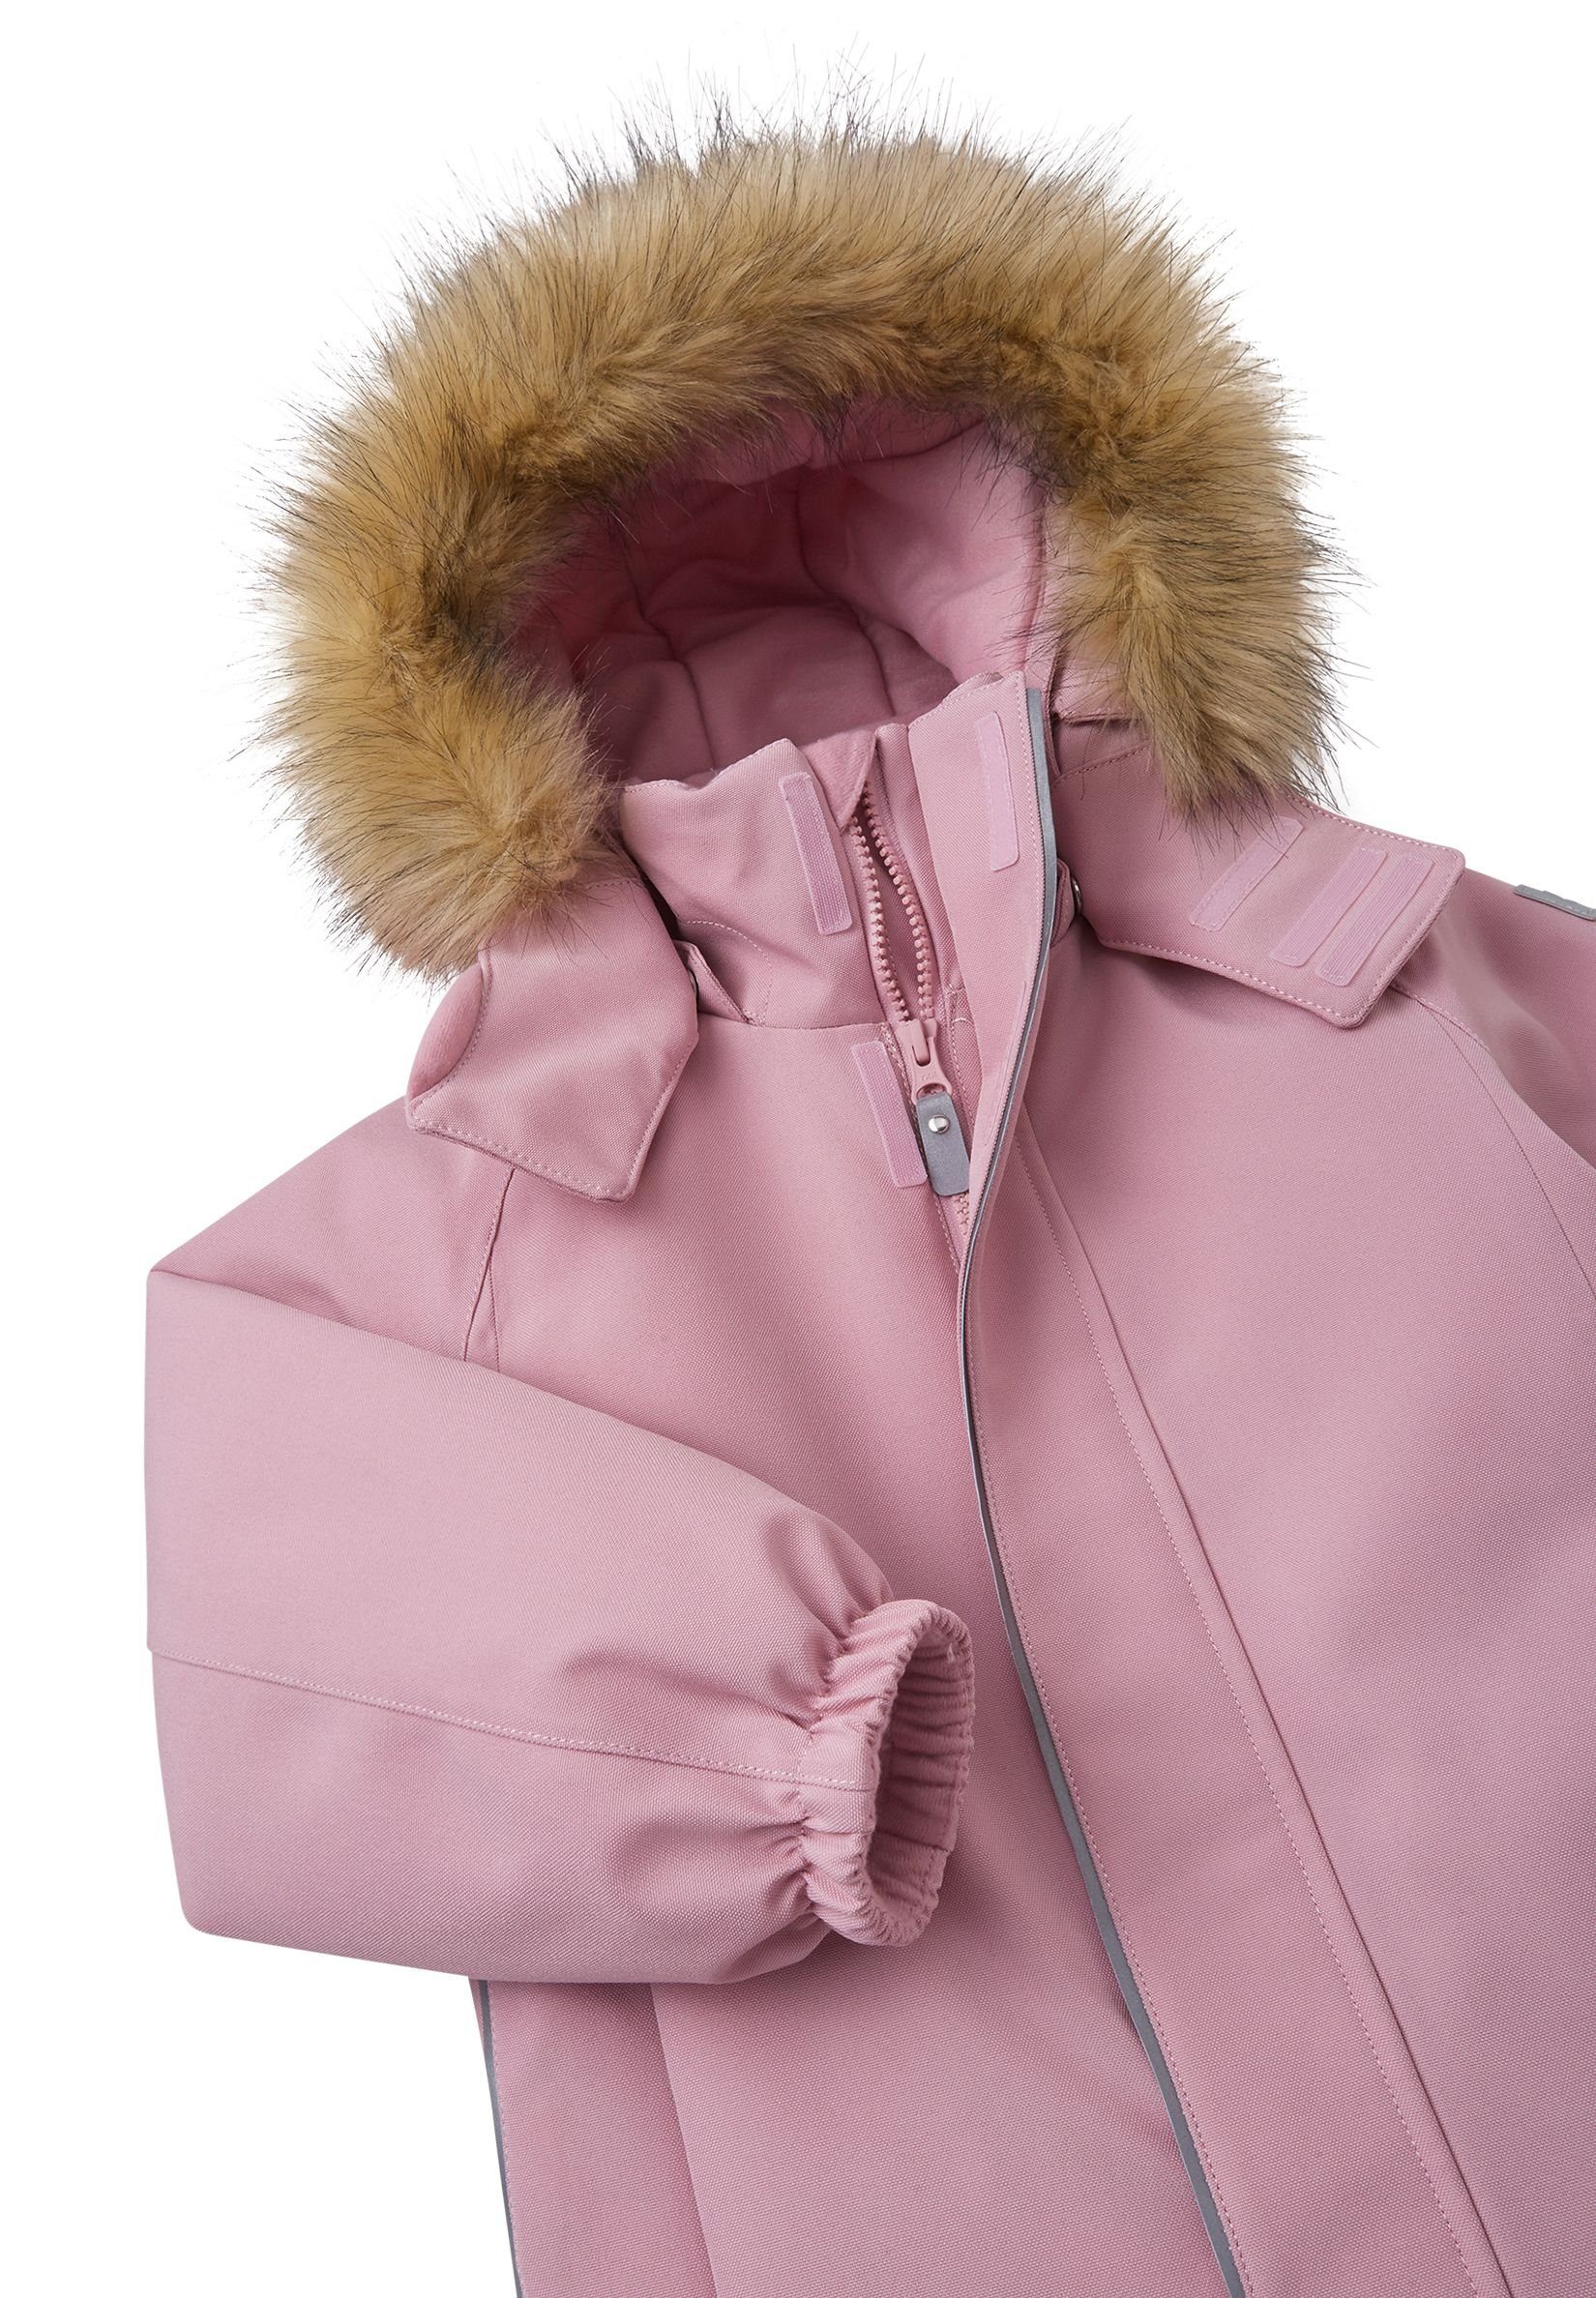 wasserdicht, und und atmungsaktiv Haupt- Trondheim Pink Futtermaterial bluesign®-zertifiziertes Grey wärmend reima Schneeoverall